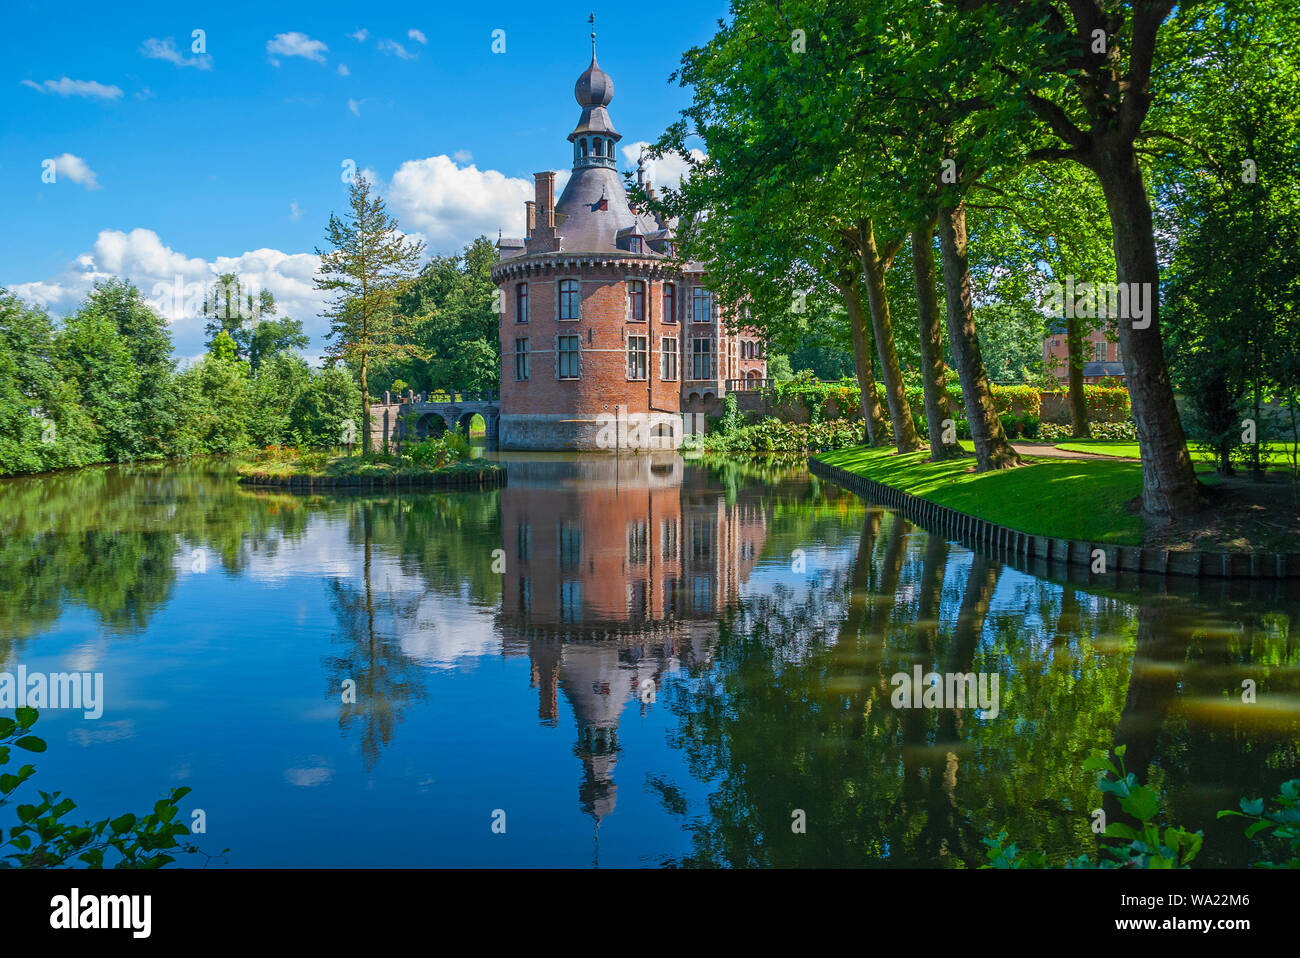 La riflessione del castello di Ooidonk in un giorno di estate si trova nel fiume Leie regione vicino a Gent (Ghent in inglese), Belgio. Foto Stock